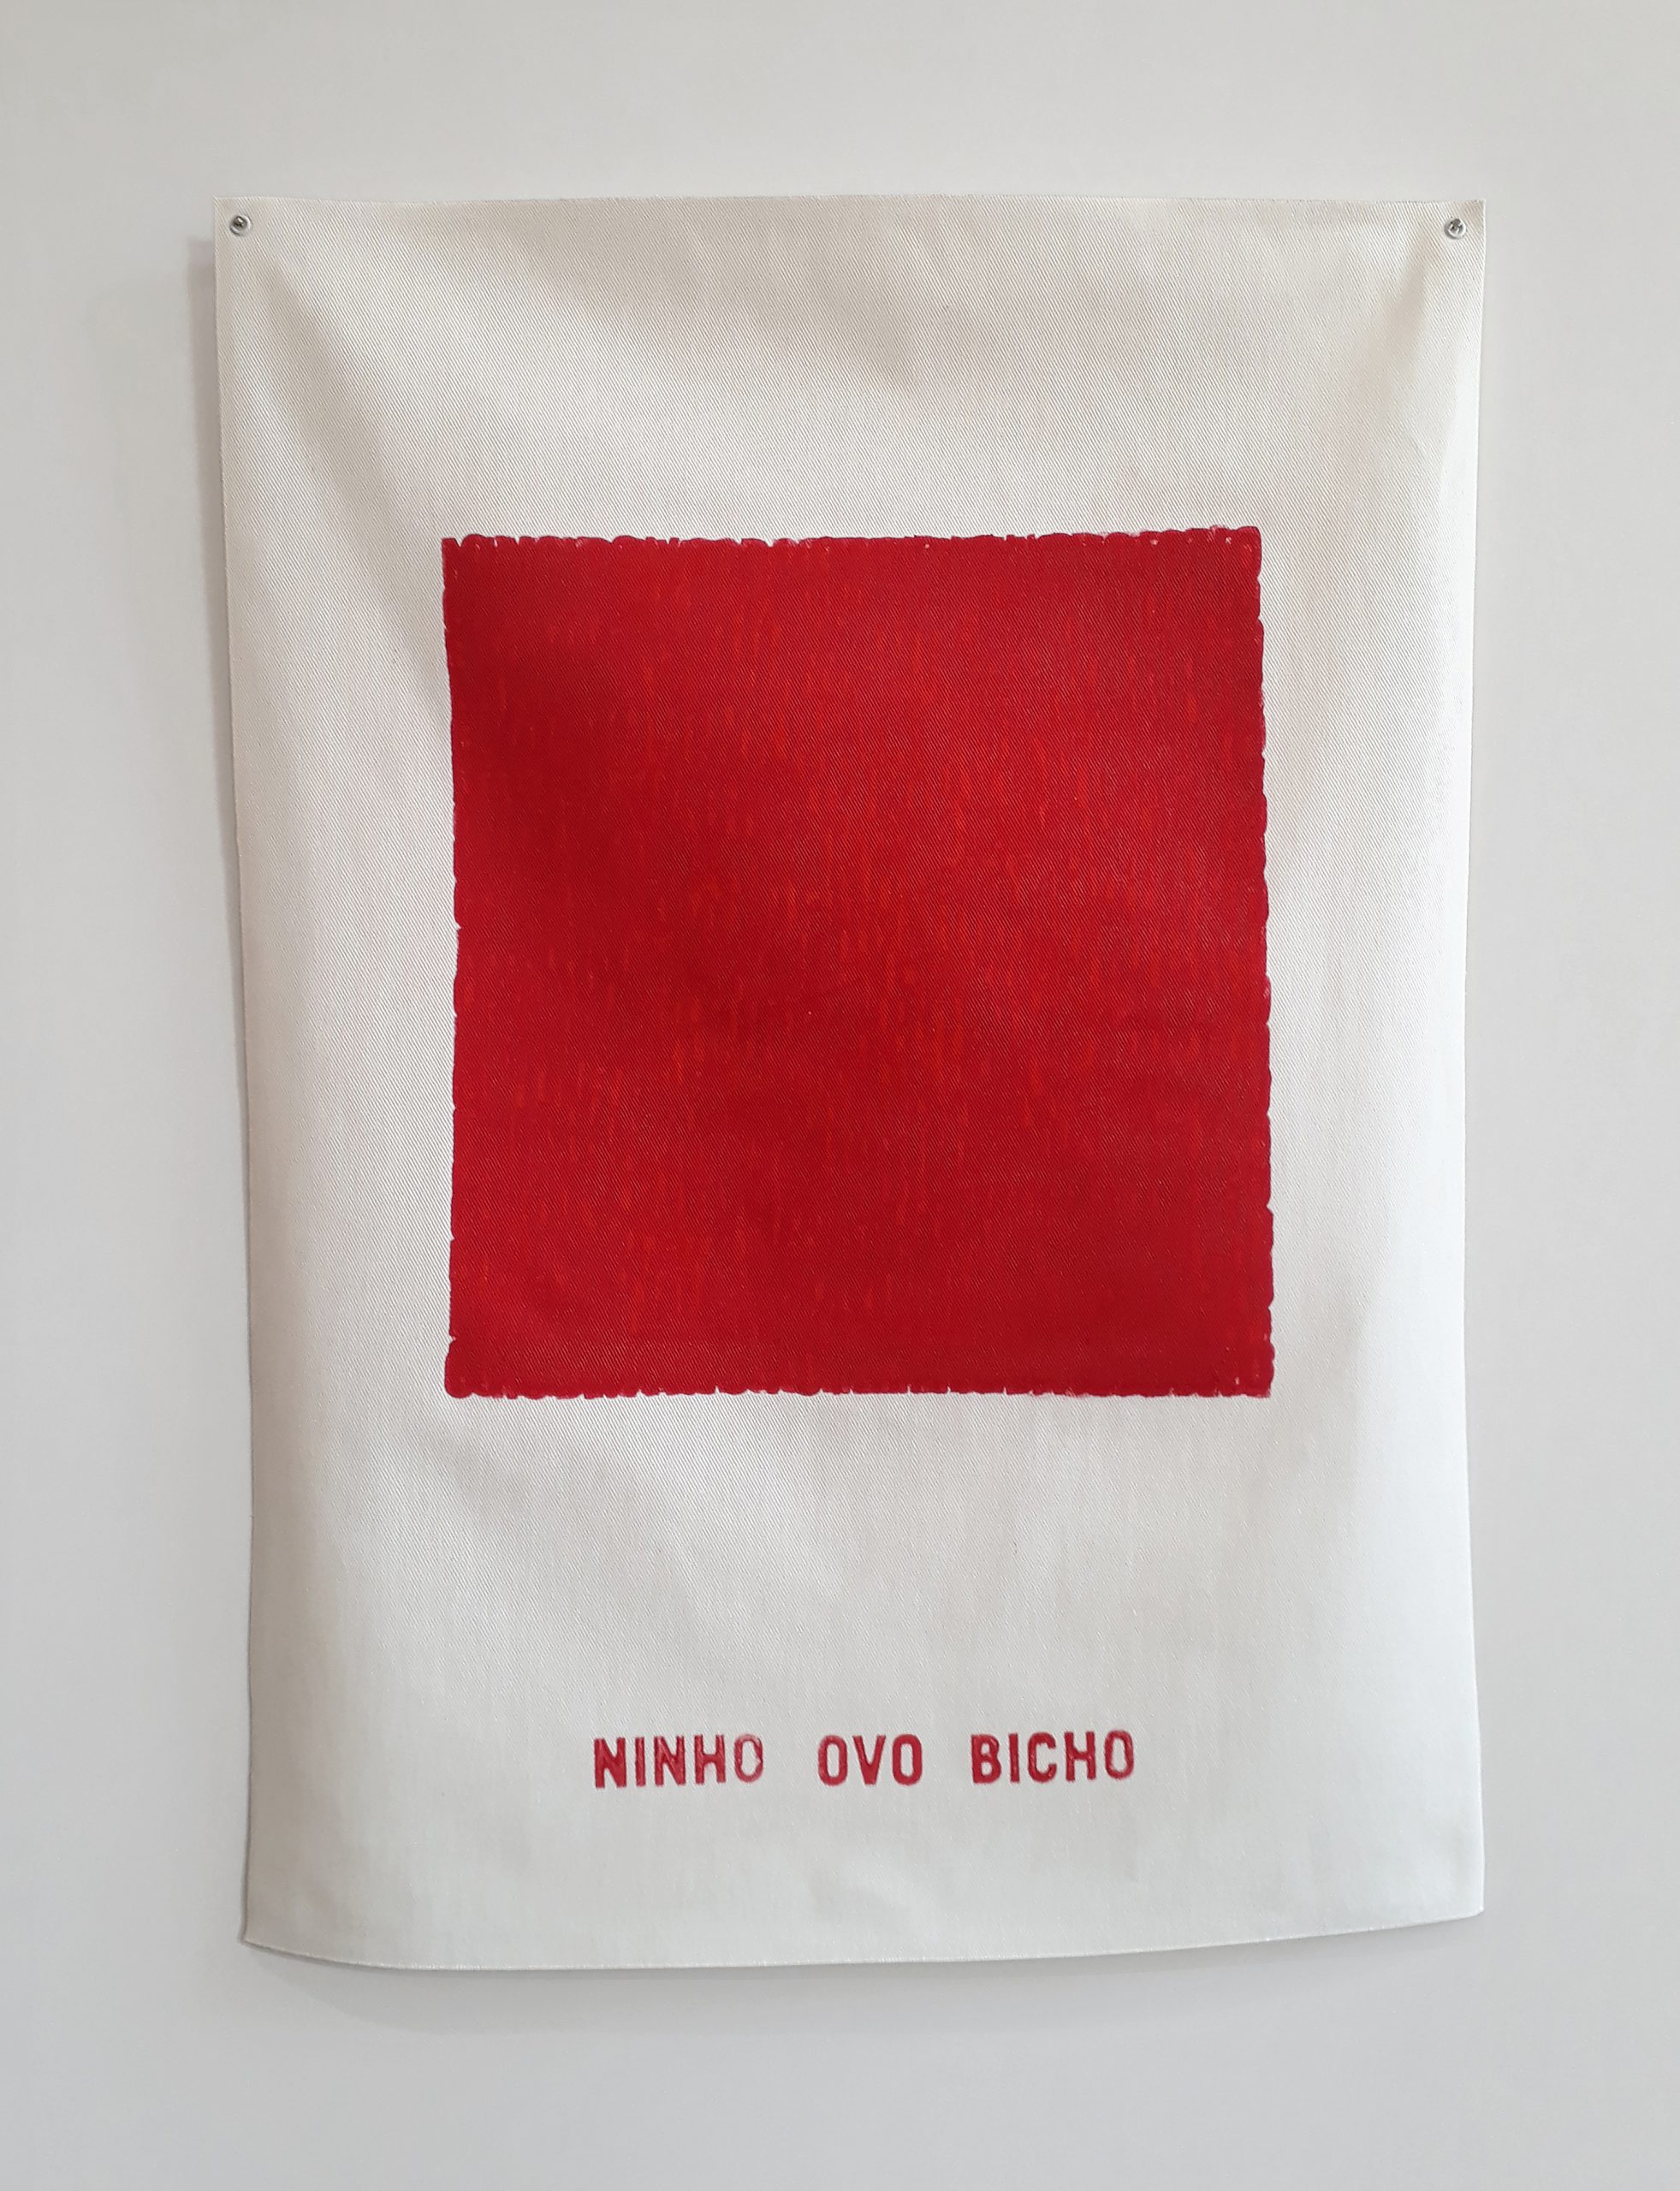 Heleno Bernardi, NINHO OVO BICHO (tributo neoconcreto), 2022, Carimbo com tinta acrílica sobre tecido de algodão, 48 x 64 cm (múltiplo)